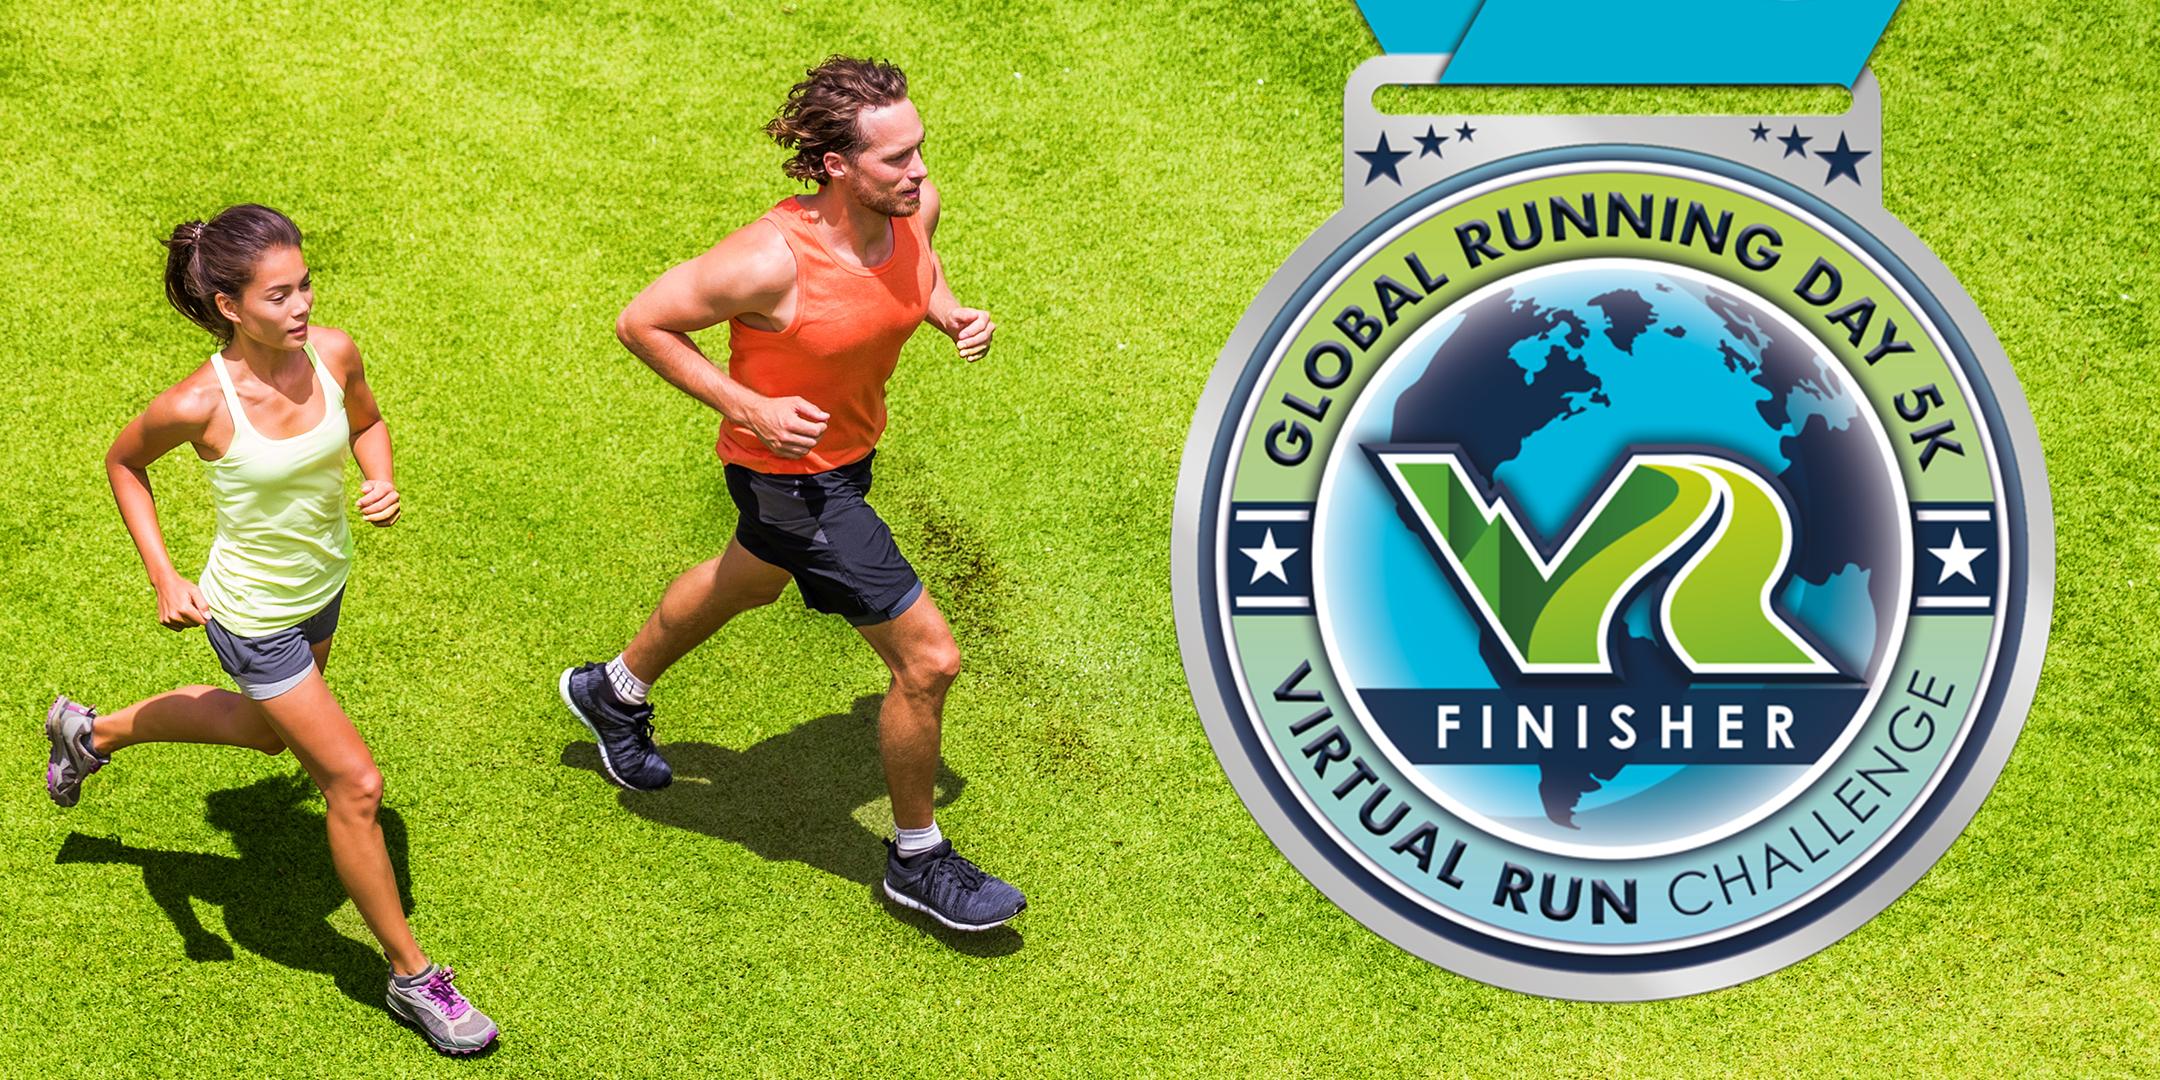 2020 Global Running Day Free Virtual 5k - St. Louis